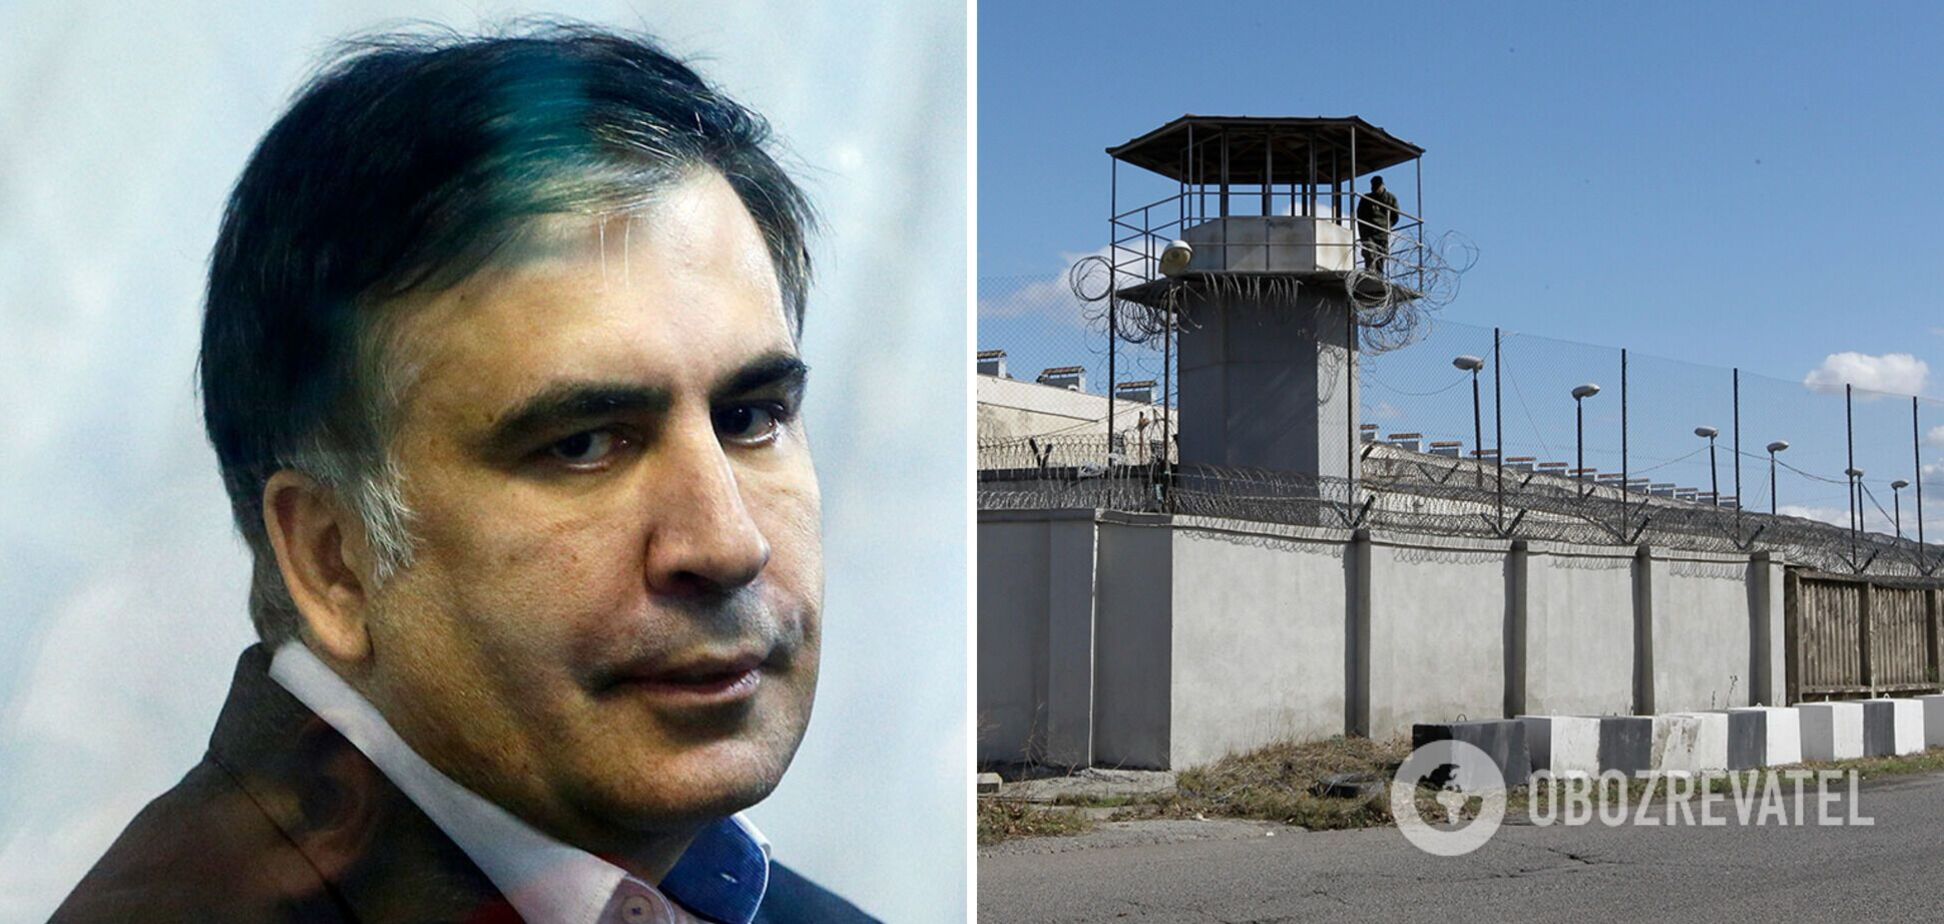 Саакашвили в тюрьме потерял сознание, его готовят к этапированию из больницы – СМИ